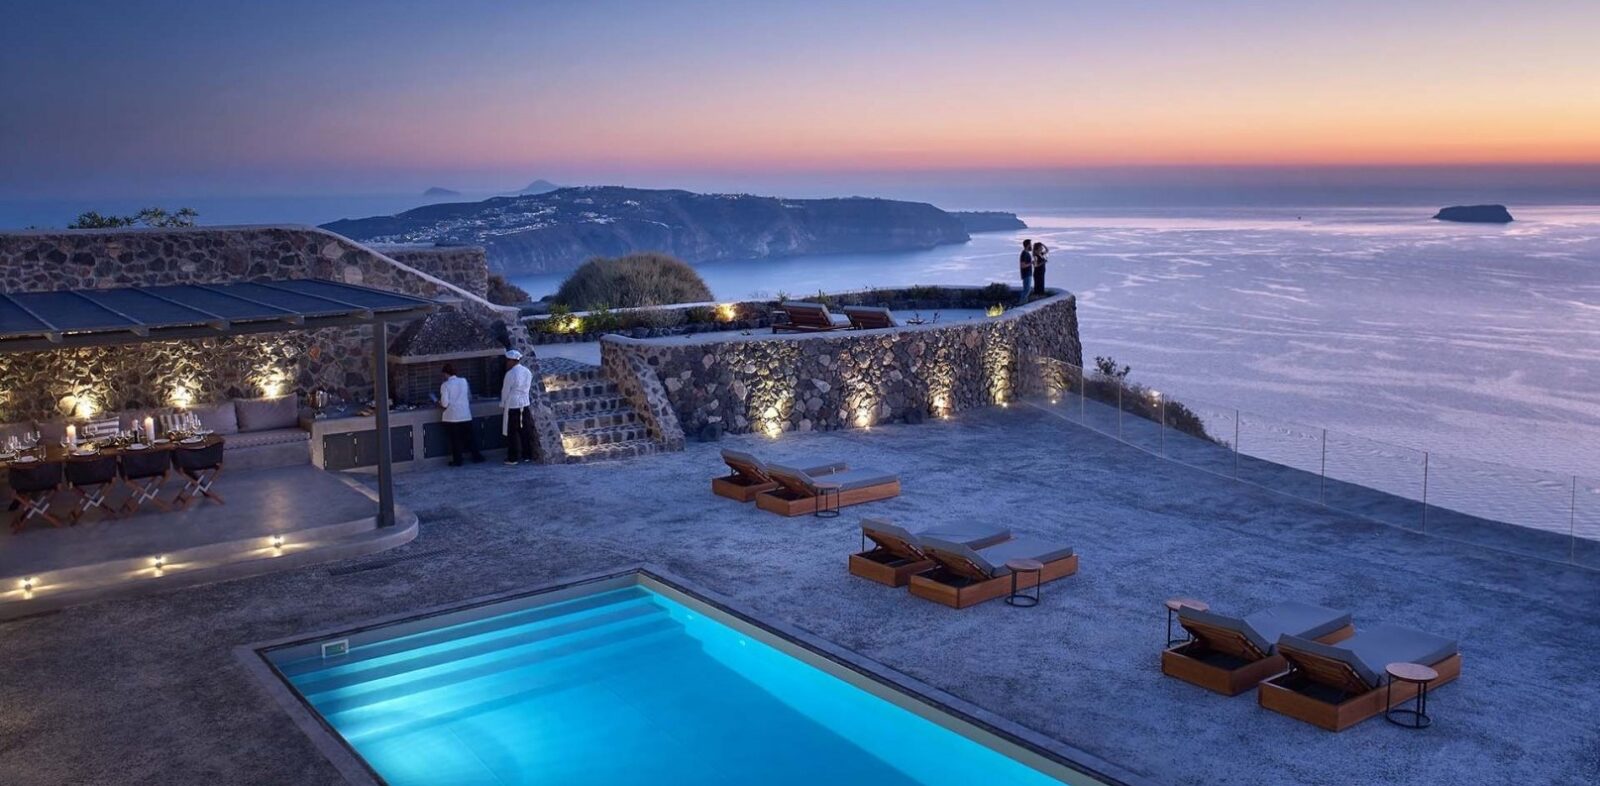 Luxury_Santorini_Villas_Nafsika_Estate_100-25710-1920-1080-90-c